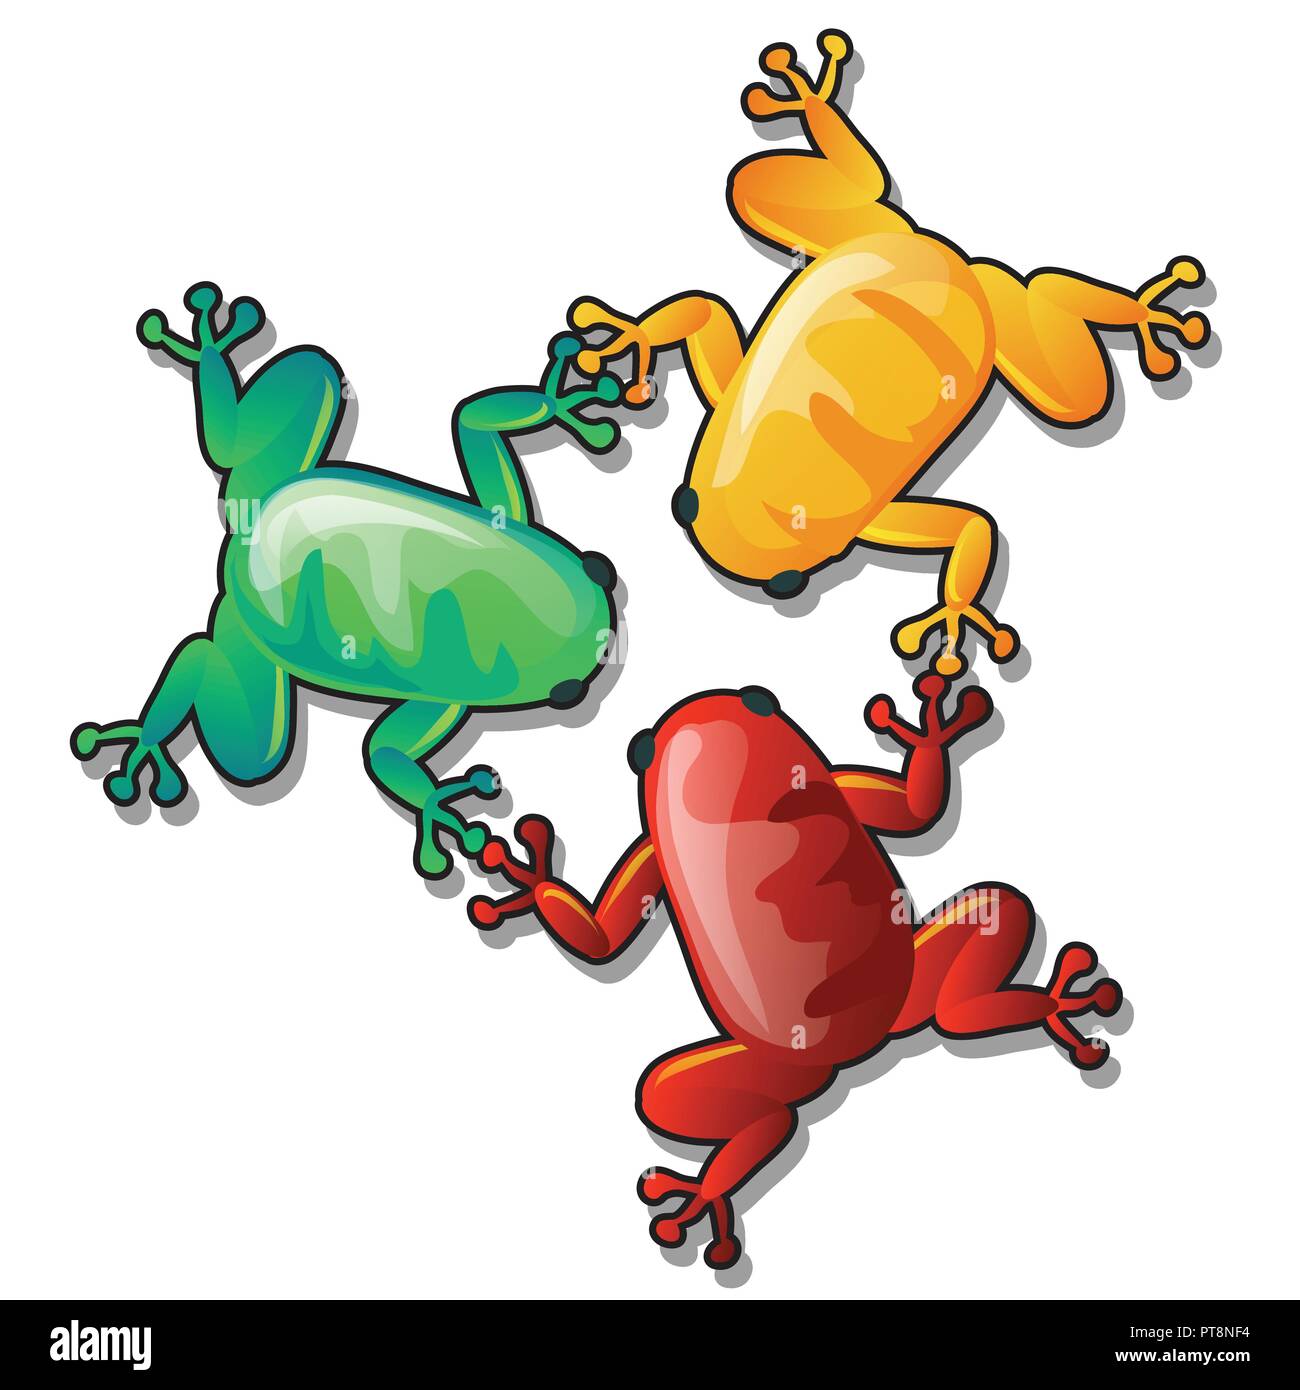 Drôle Trois grenouilles ou crapauds colorés tenir chacun d'autres pattes isolé sur fond blanc. Cartoon Vector illustration close-up. Illustration de Vecteur